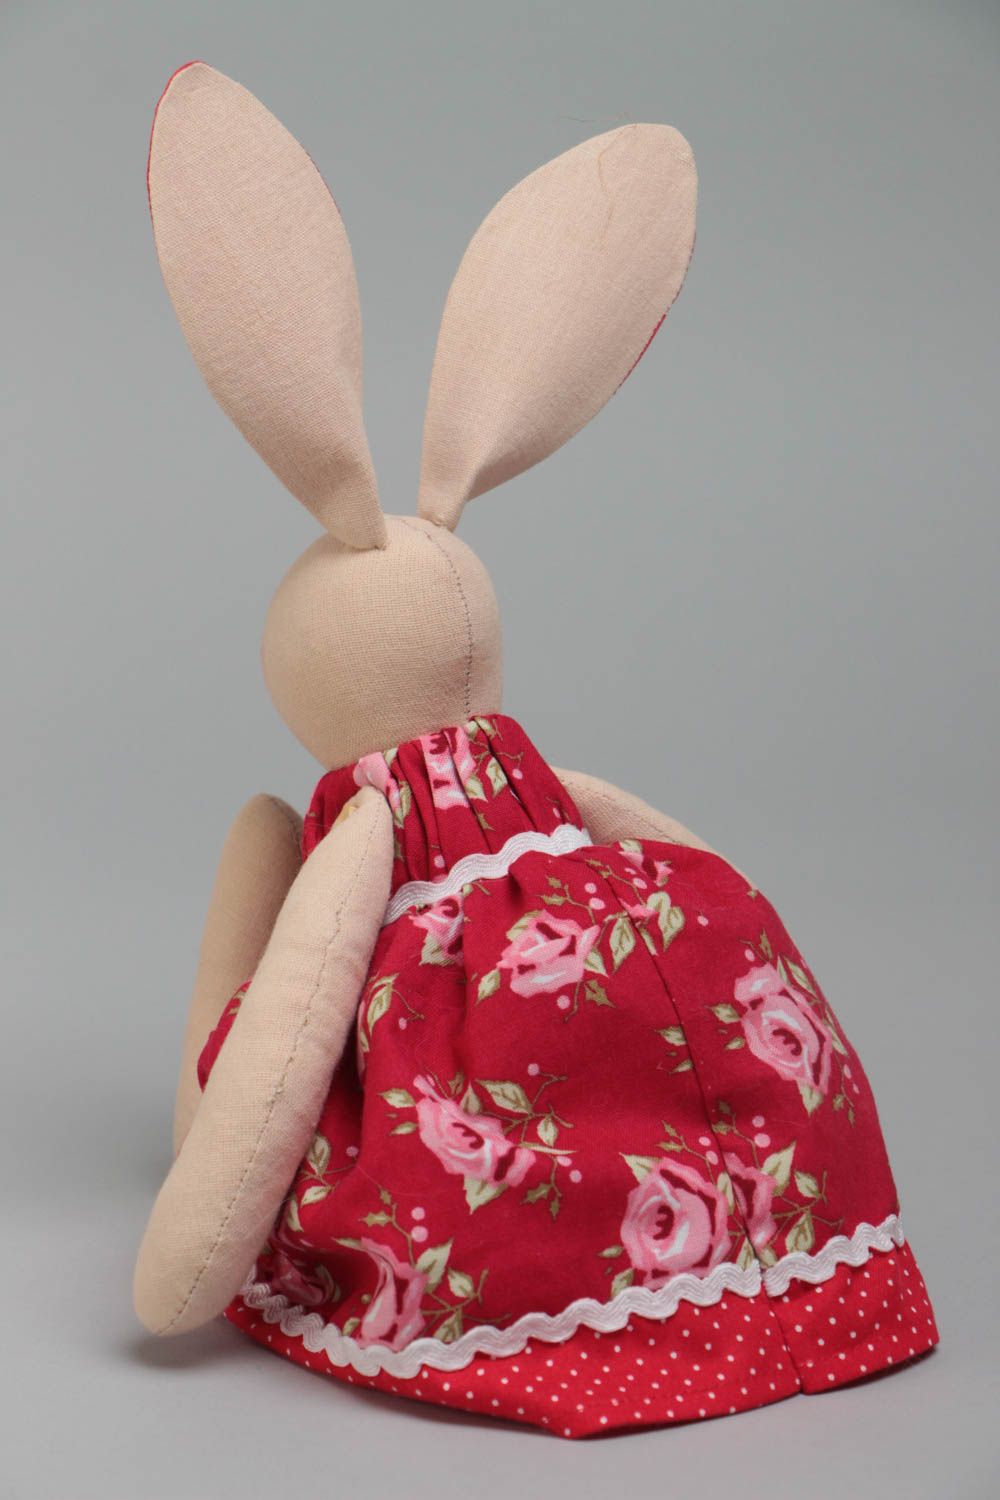 Тканевая игрушка в виде зайки в красном платье красивая небольшая ручной работы фото 4